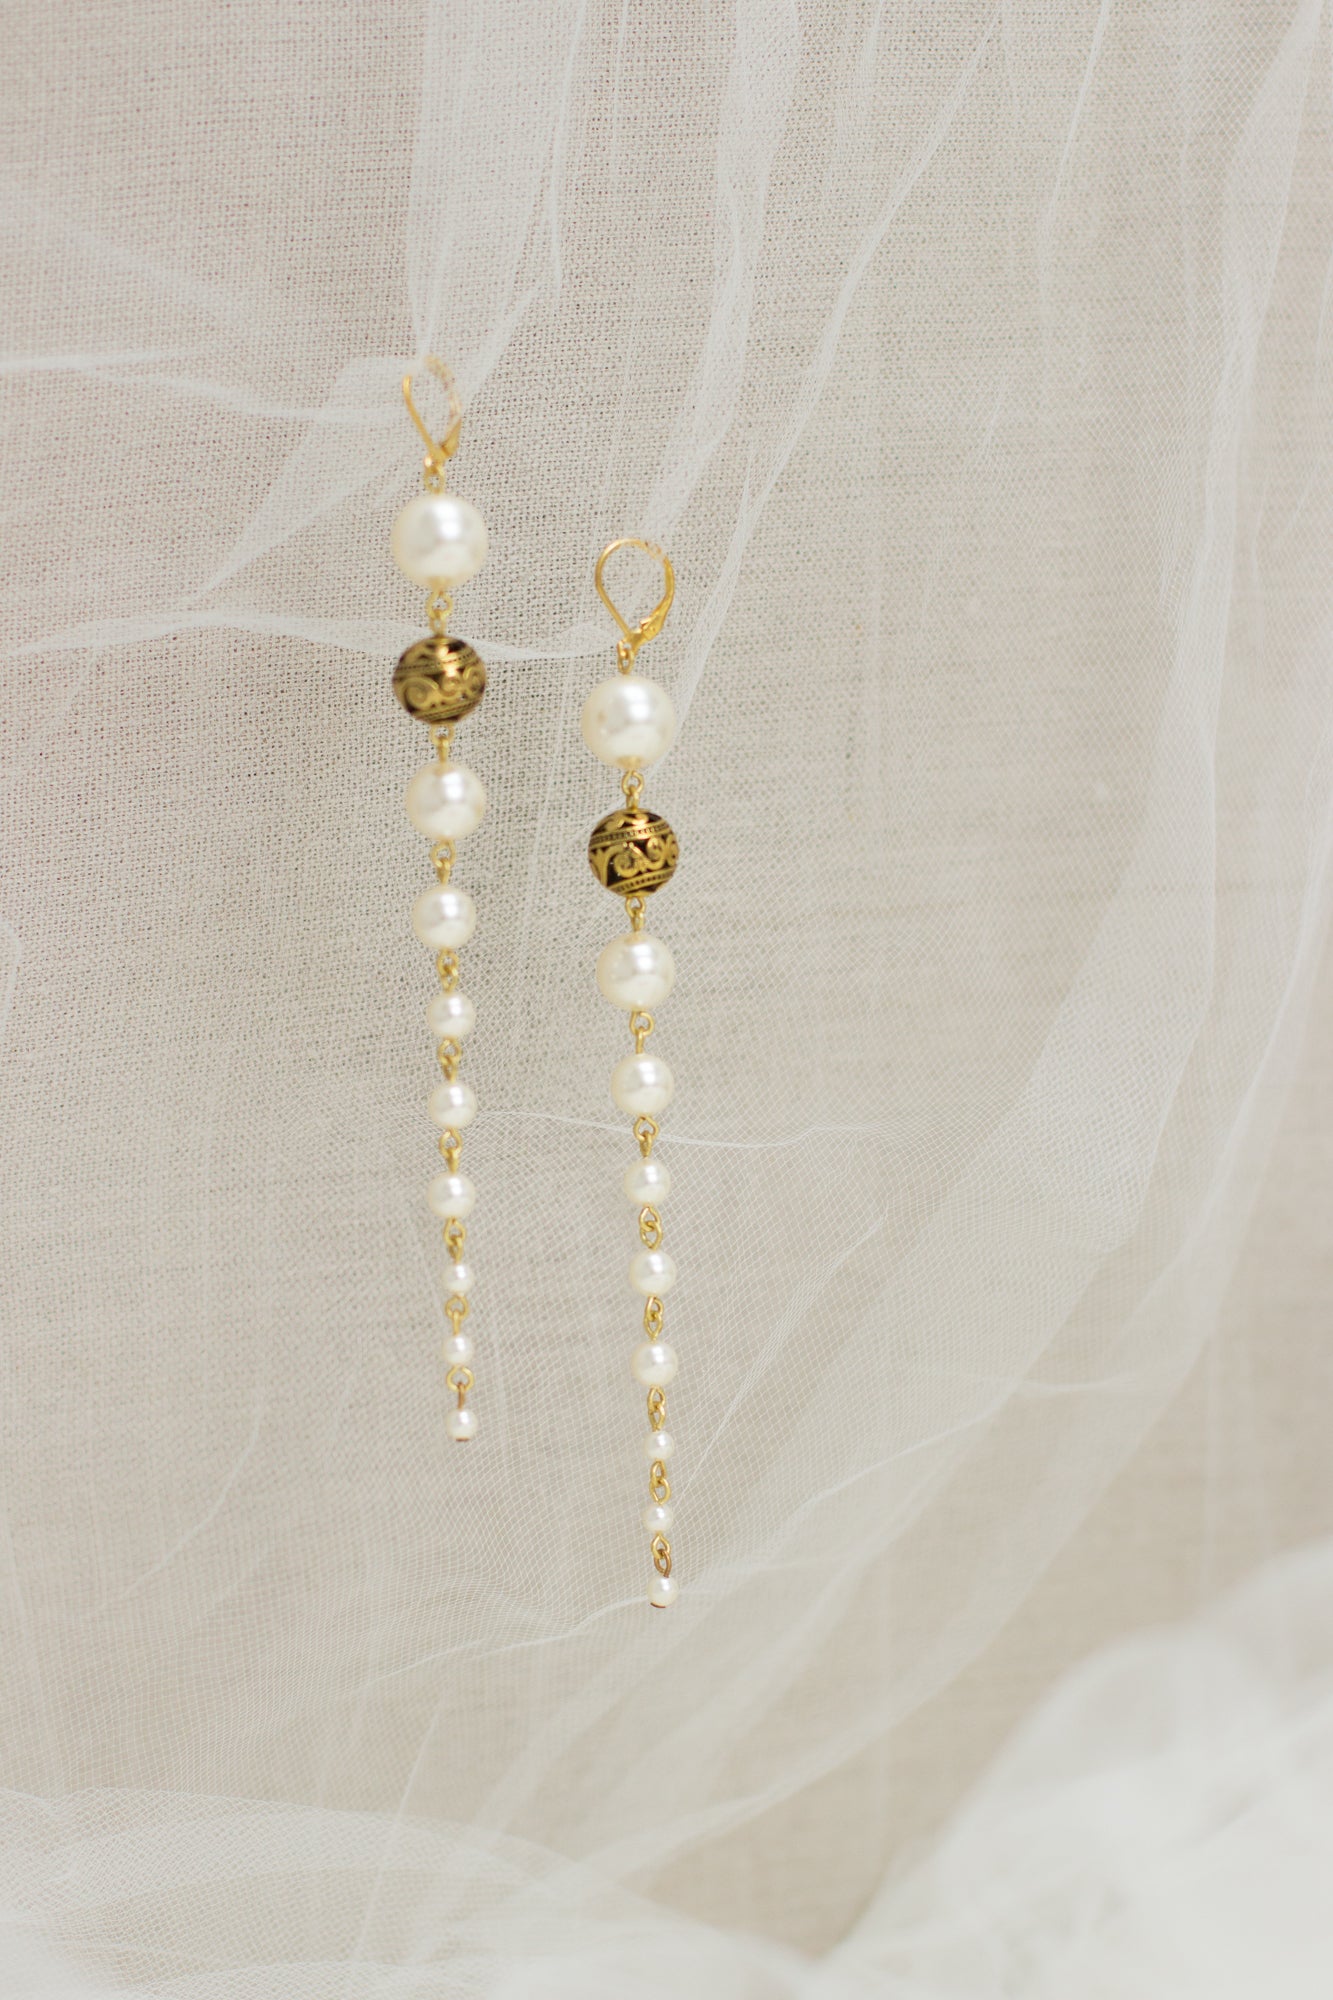 Buy online jewelry. Online boutique. Long Pearl earrings. Wedding earrings. Bridal jewelry. Ivory earrings. Handmade jewelry. Woman fashion bijouterie. OOAK accessories.